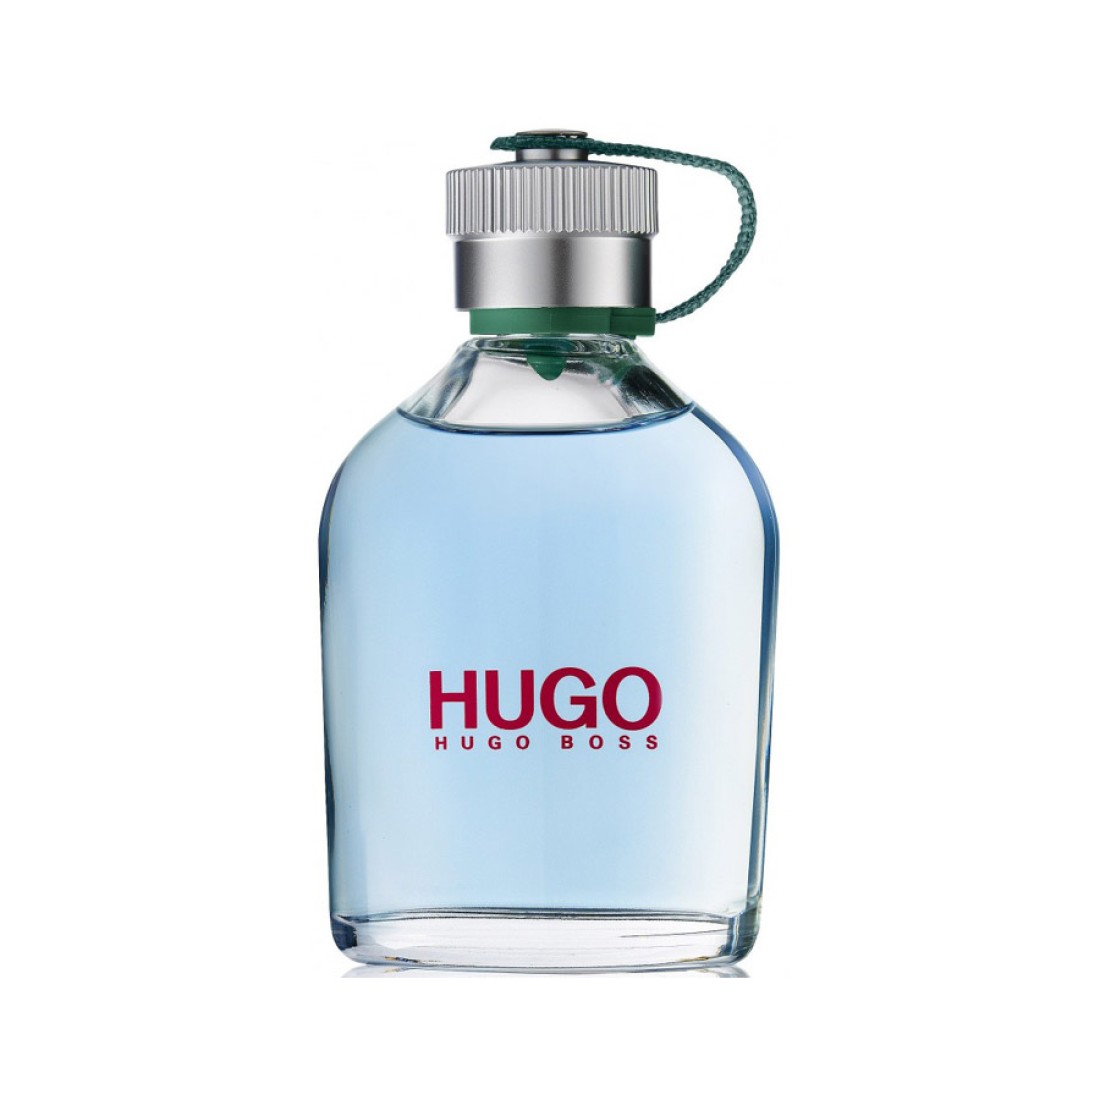 Купить hugo оригинал. Хьюго босс. Хьюго босс Хьюго мен. Парфюм Hugo man Hugo Boss. Hugo Boss Classic.